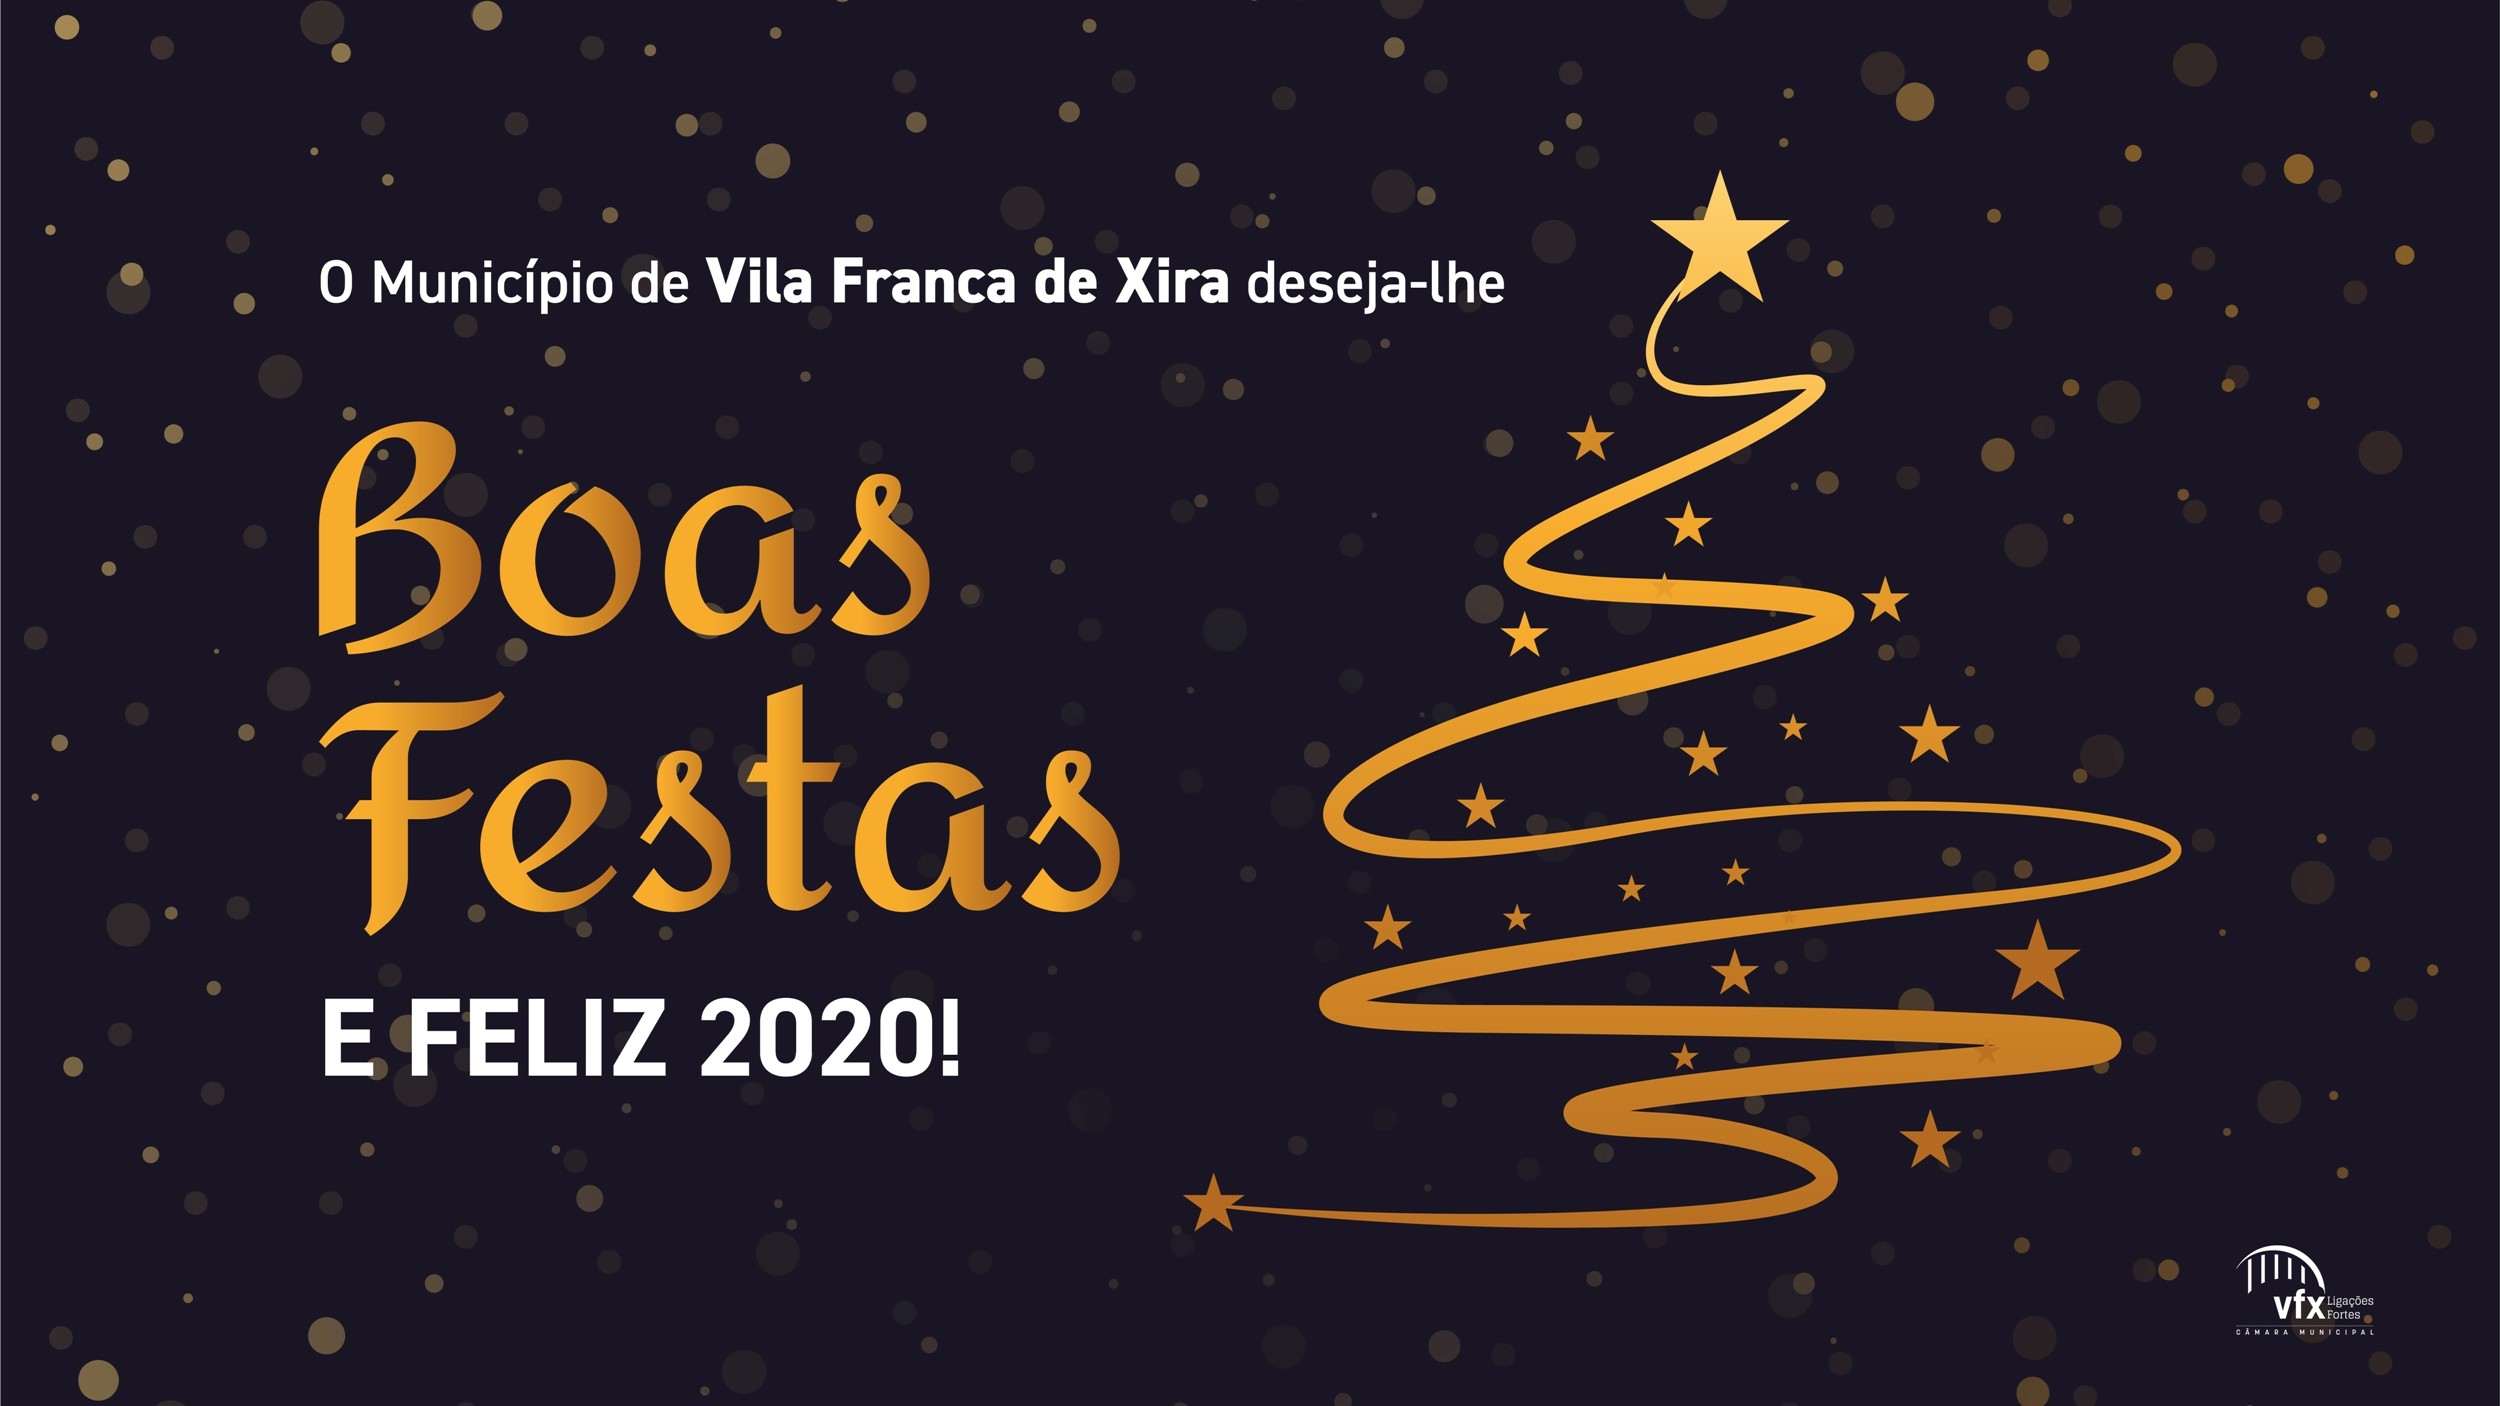 O Município de Vila Franca de Xira deseja-lhe Boas Festas e Feliz 2020!